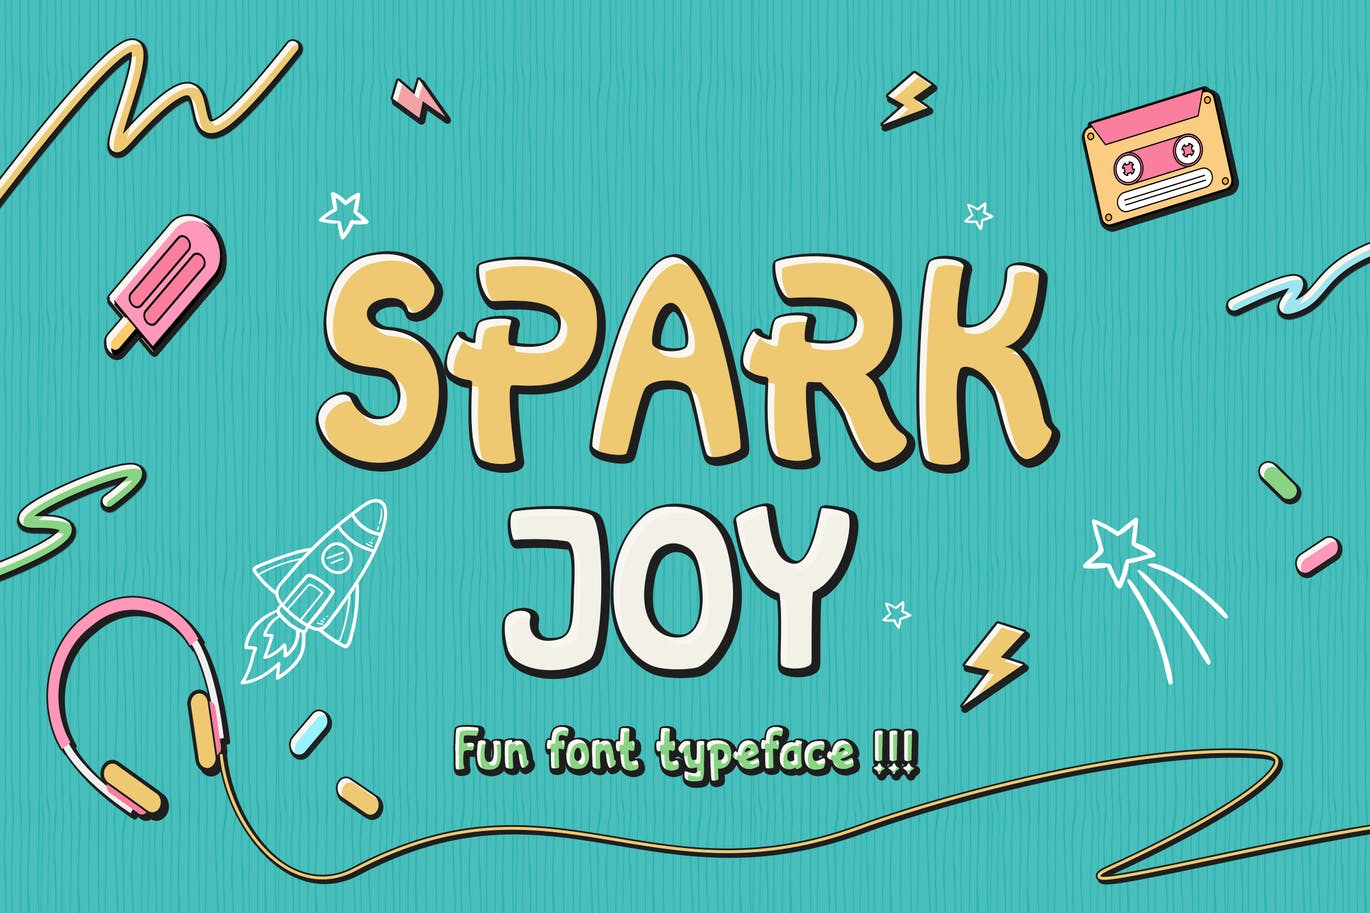 漫画风格无衬线字体素材 Spark Joy – Comic Display Font 设计素材 第1张